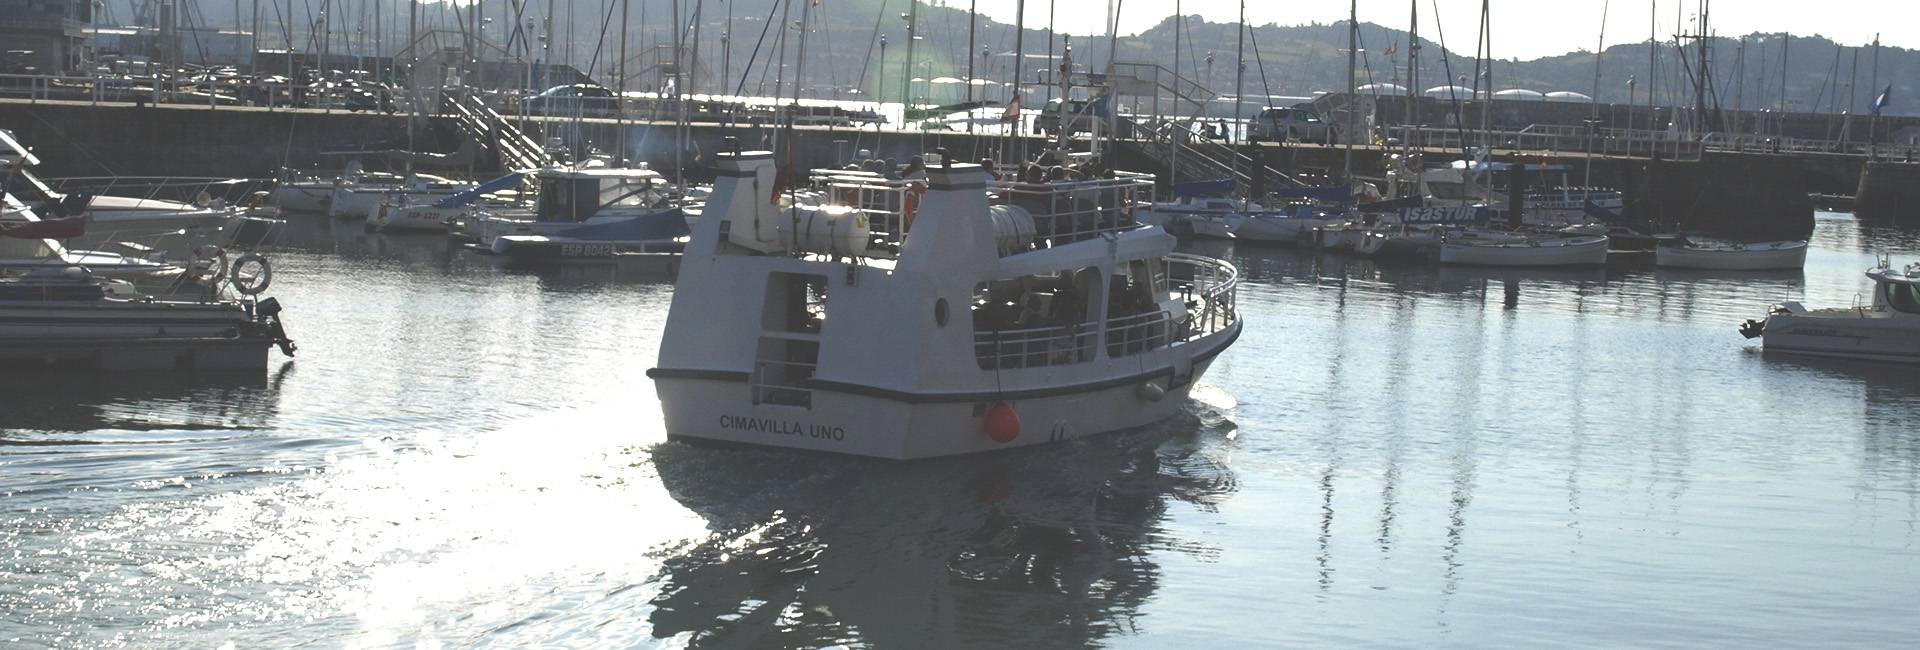 Paseos en barco Gijón